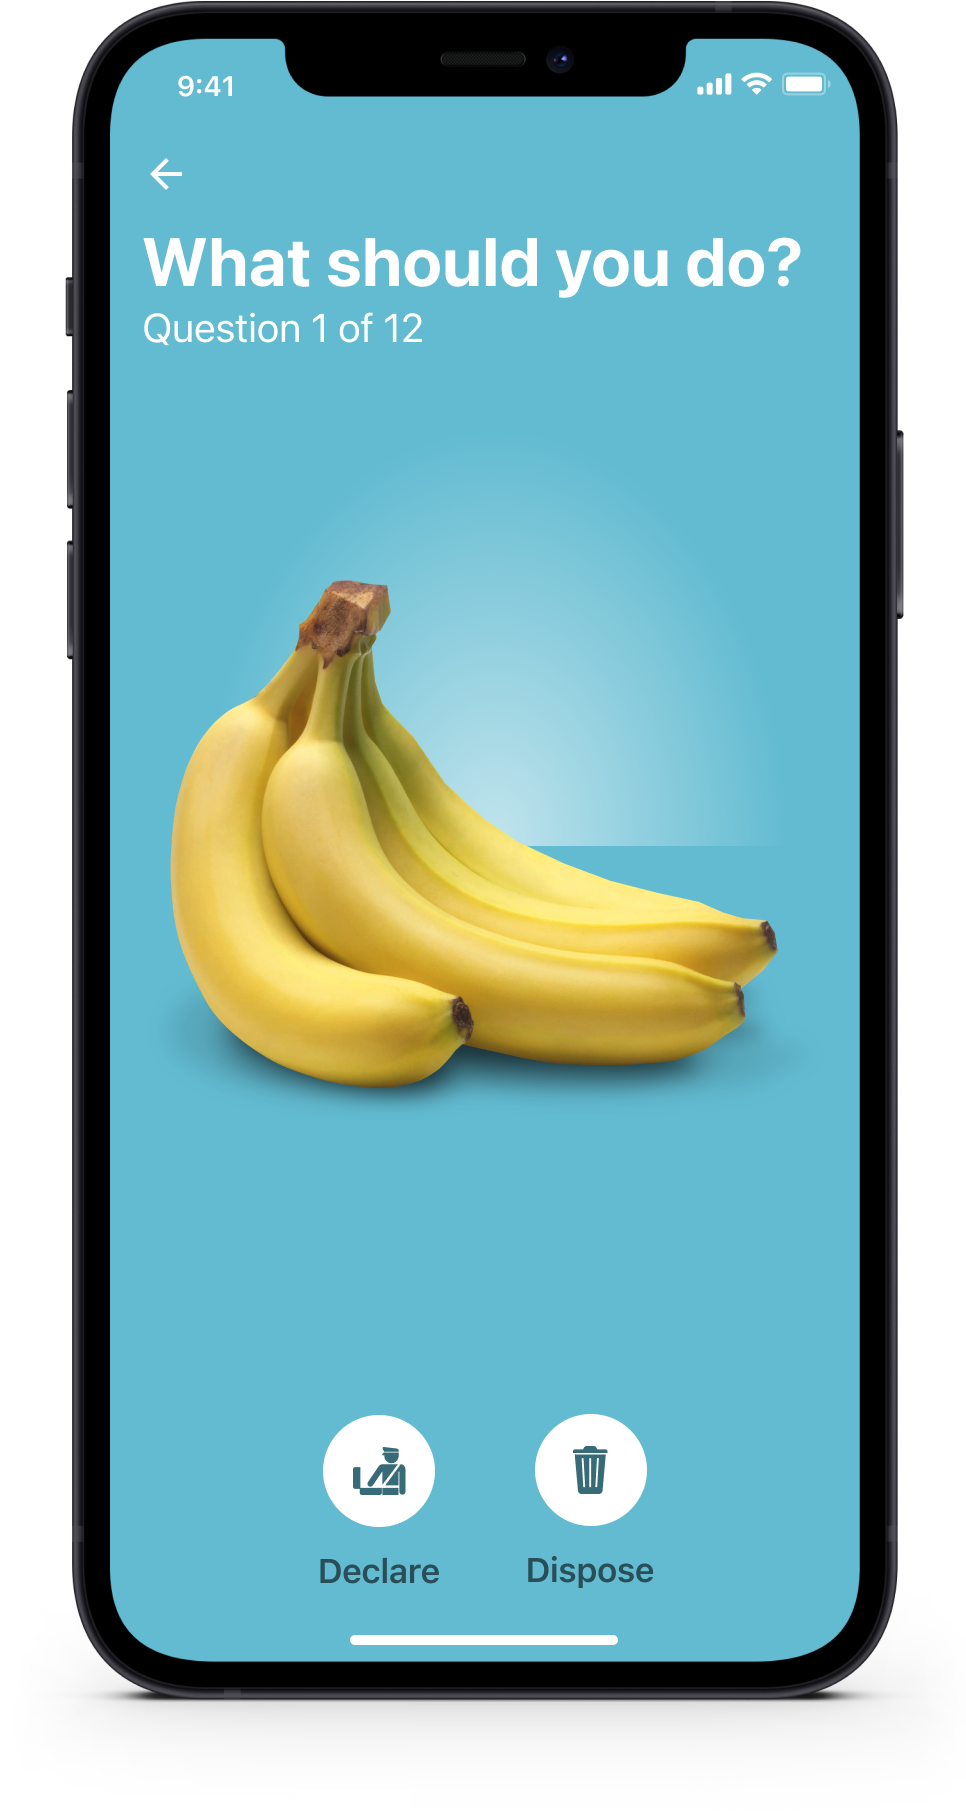 dispose-or-declare-mobile-app-banana